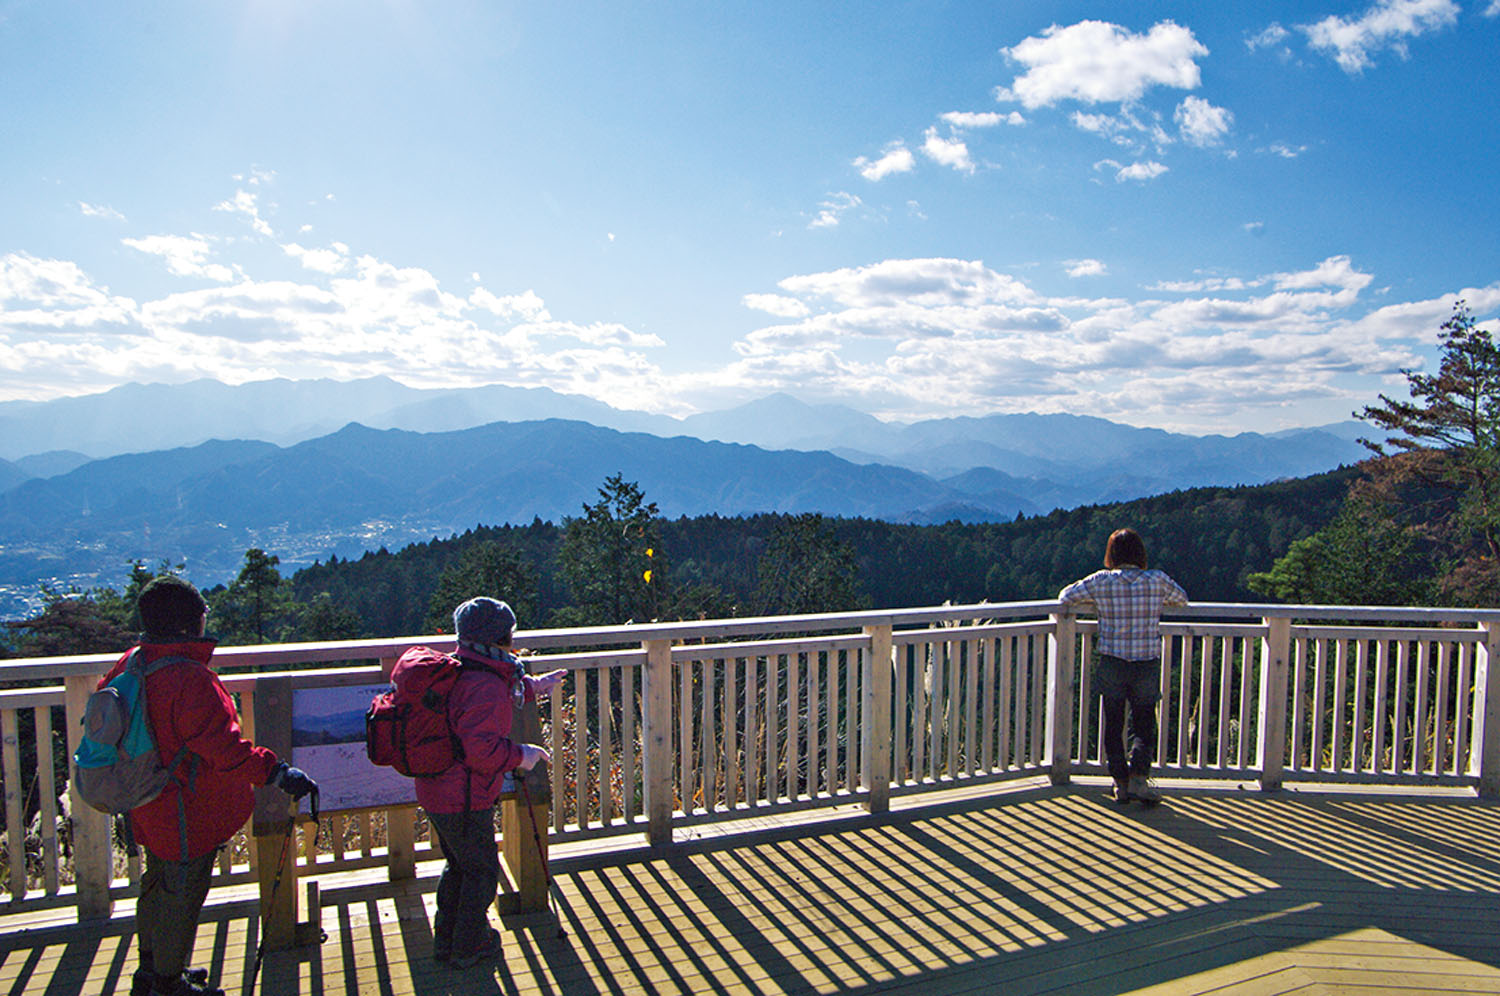 一丁平の展望台。富士山周辺の展望は高尾山、小仏城山とほぼ同じ。一丁平周辺はサクラで知られ、毎年4月中旬が見頃。